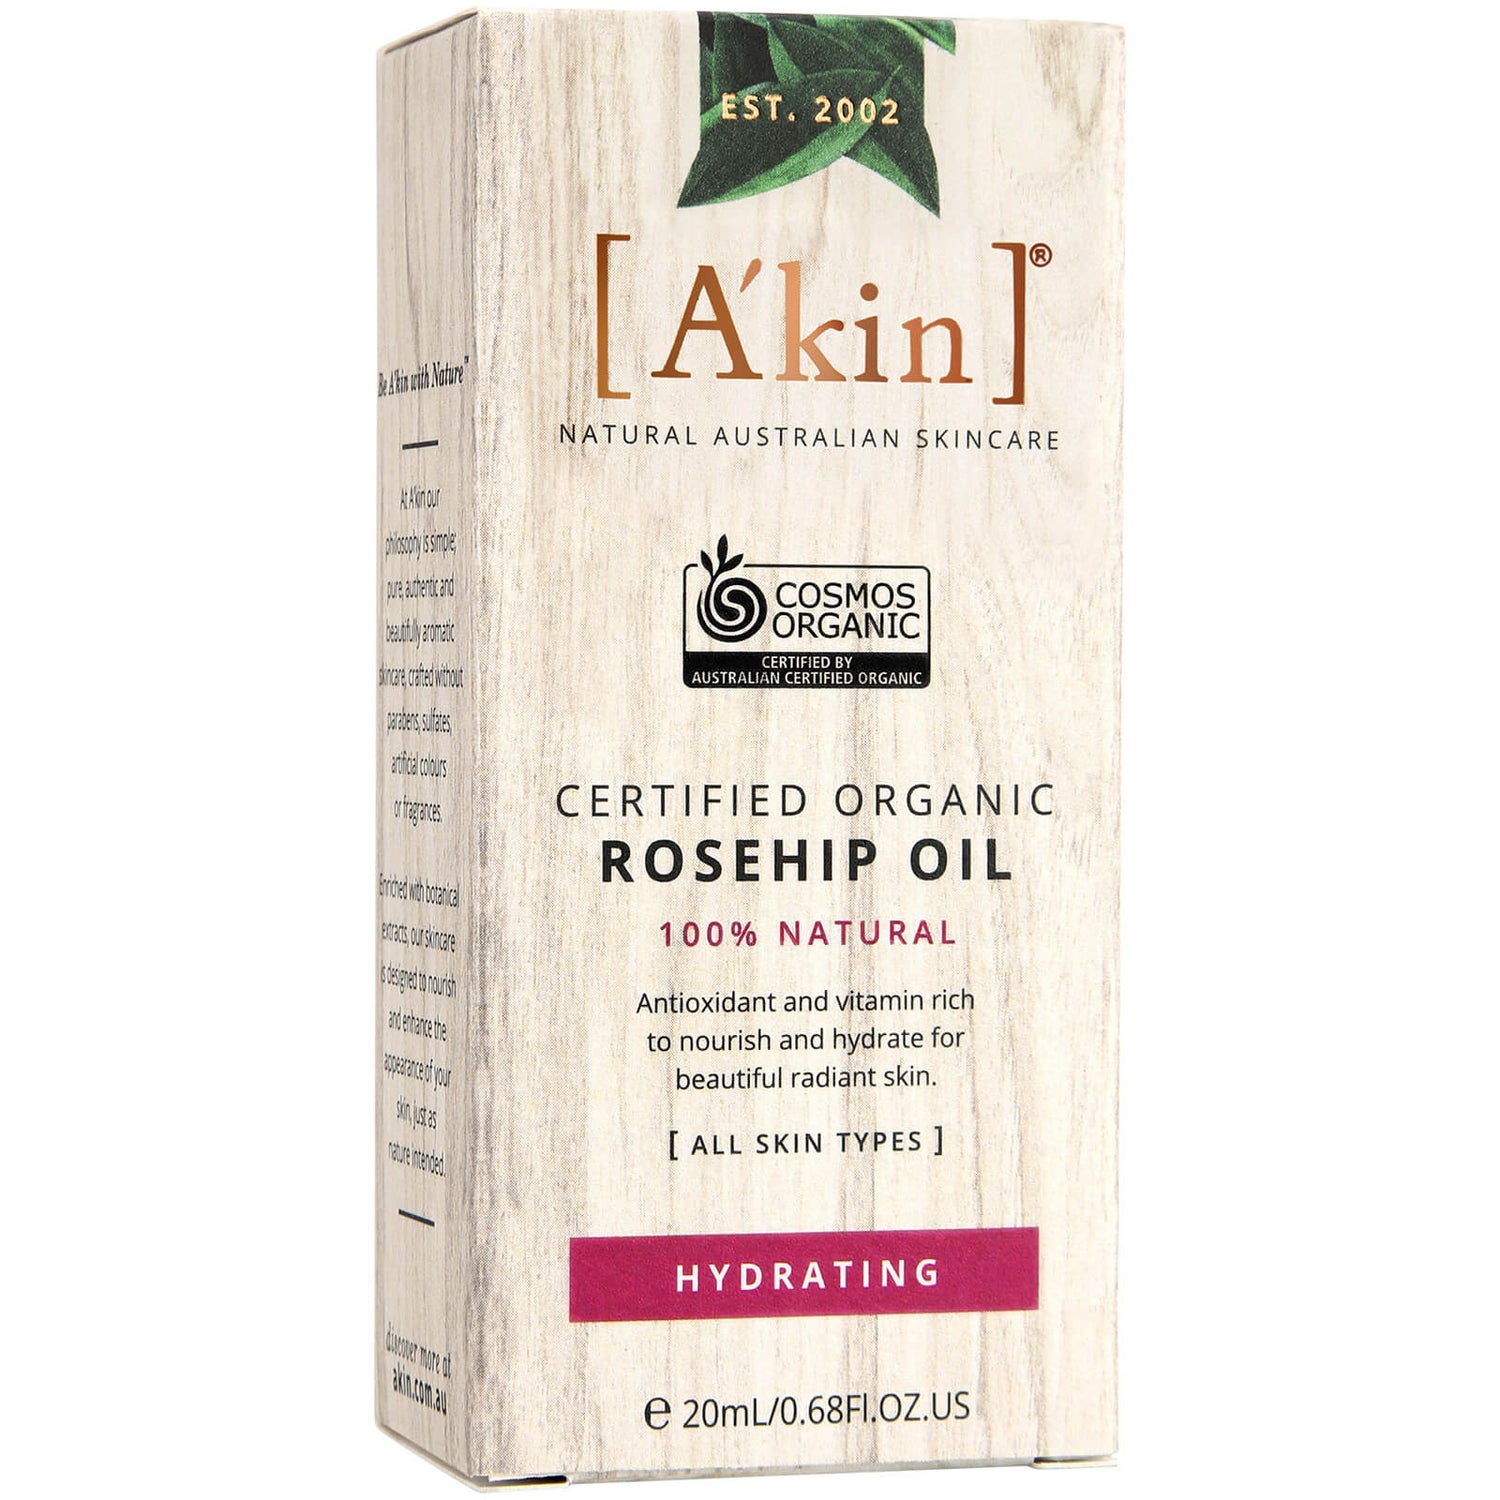 A'kin Certified Organic Rosehip Oil olejek z dzikiej róży certyfikowany jako ekologiczny 20 ml